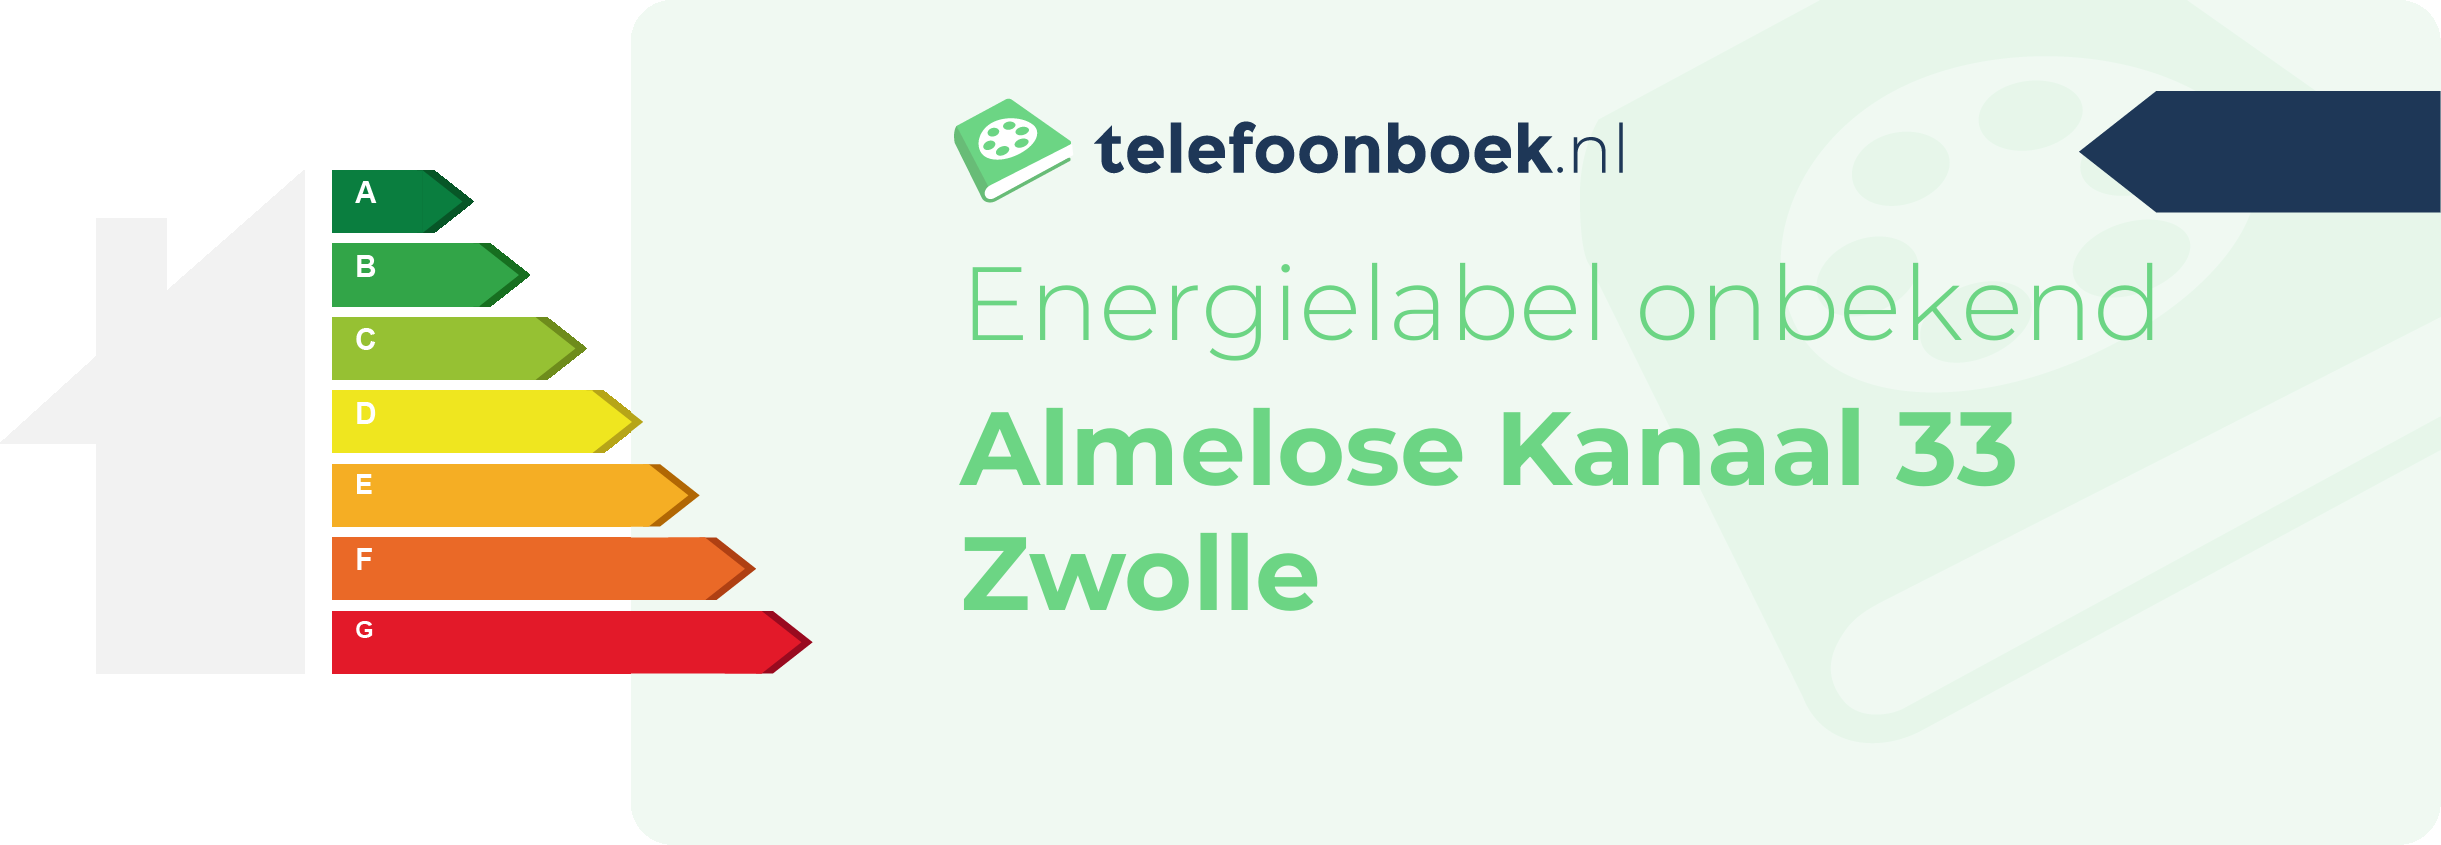 Energielabel Almelose Kanaal 33 Zwolle